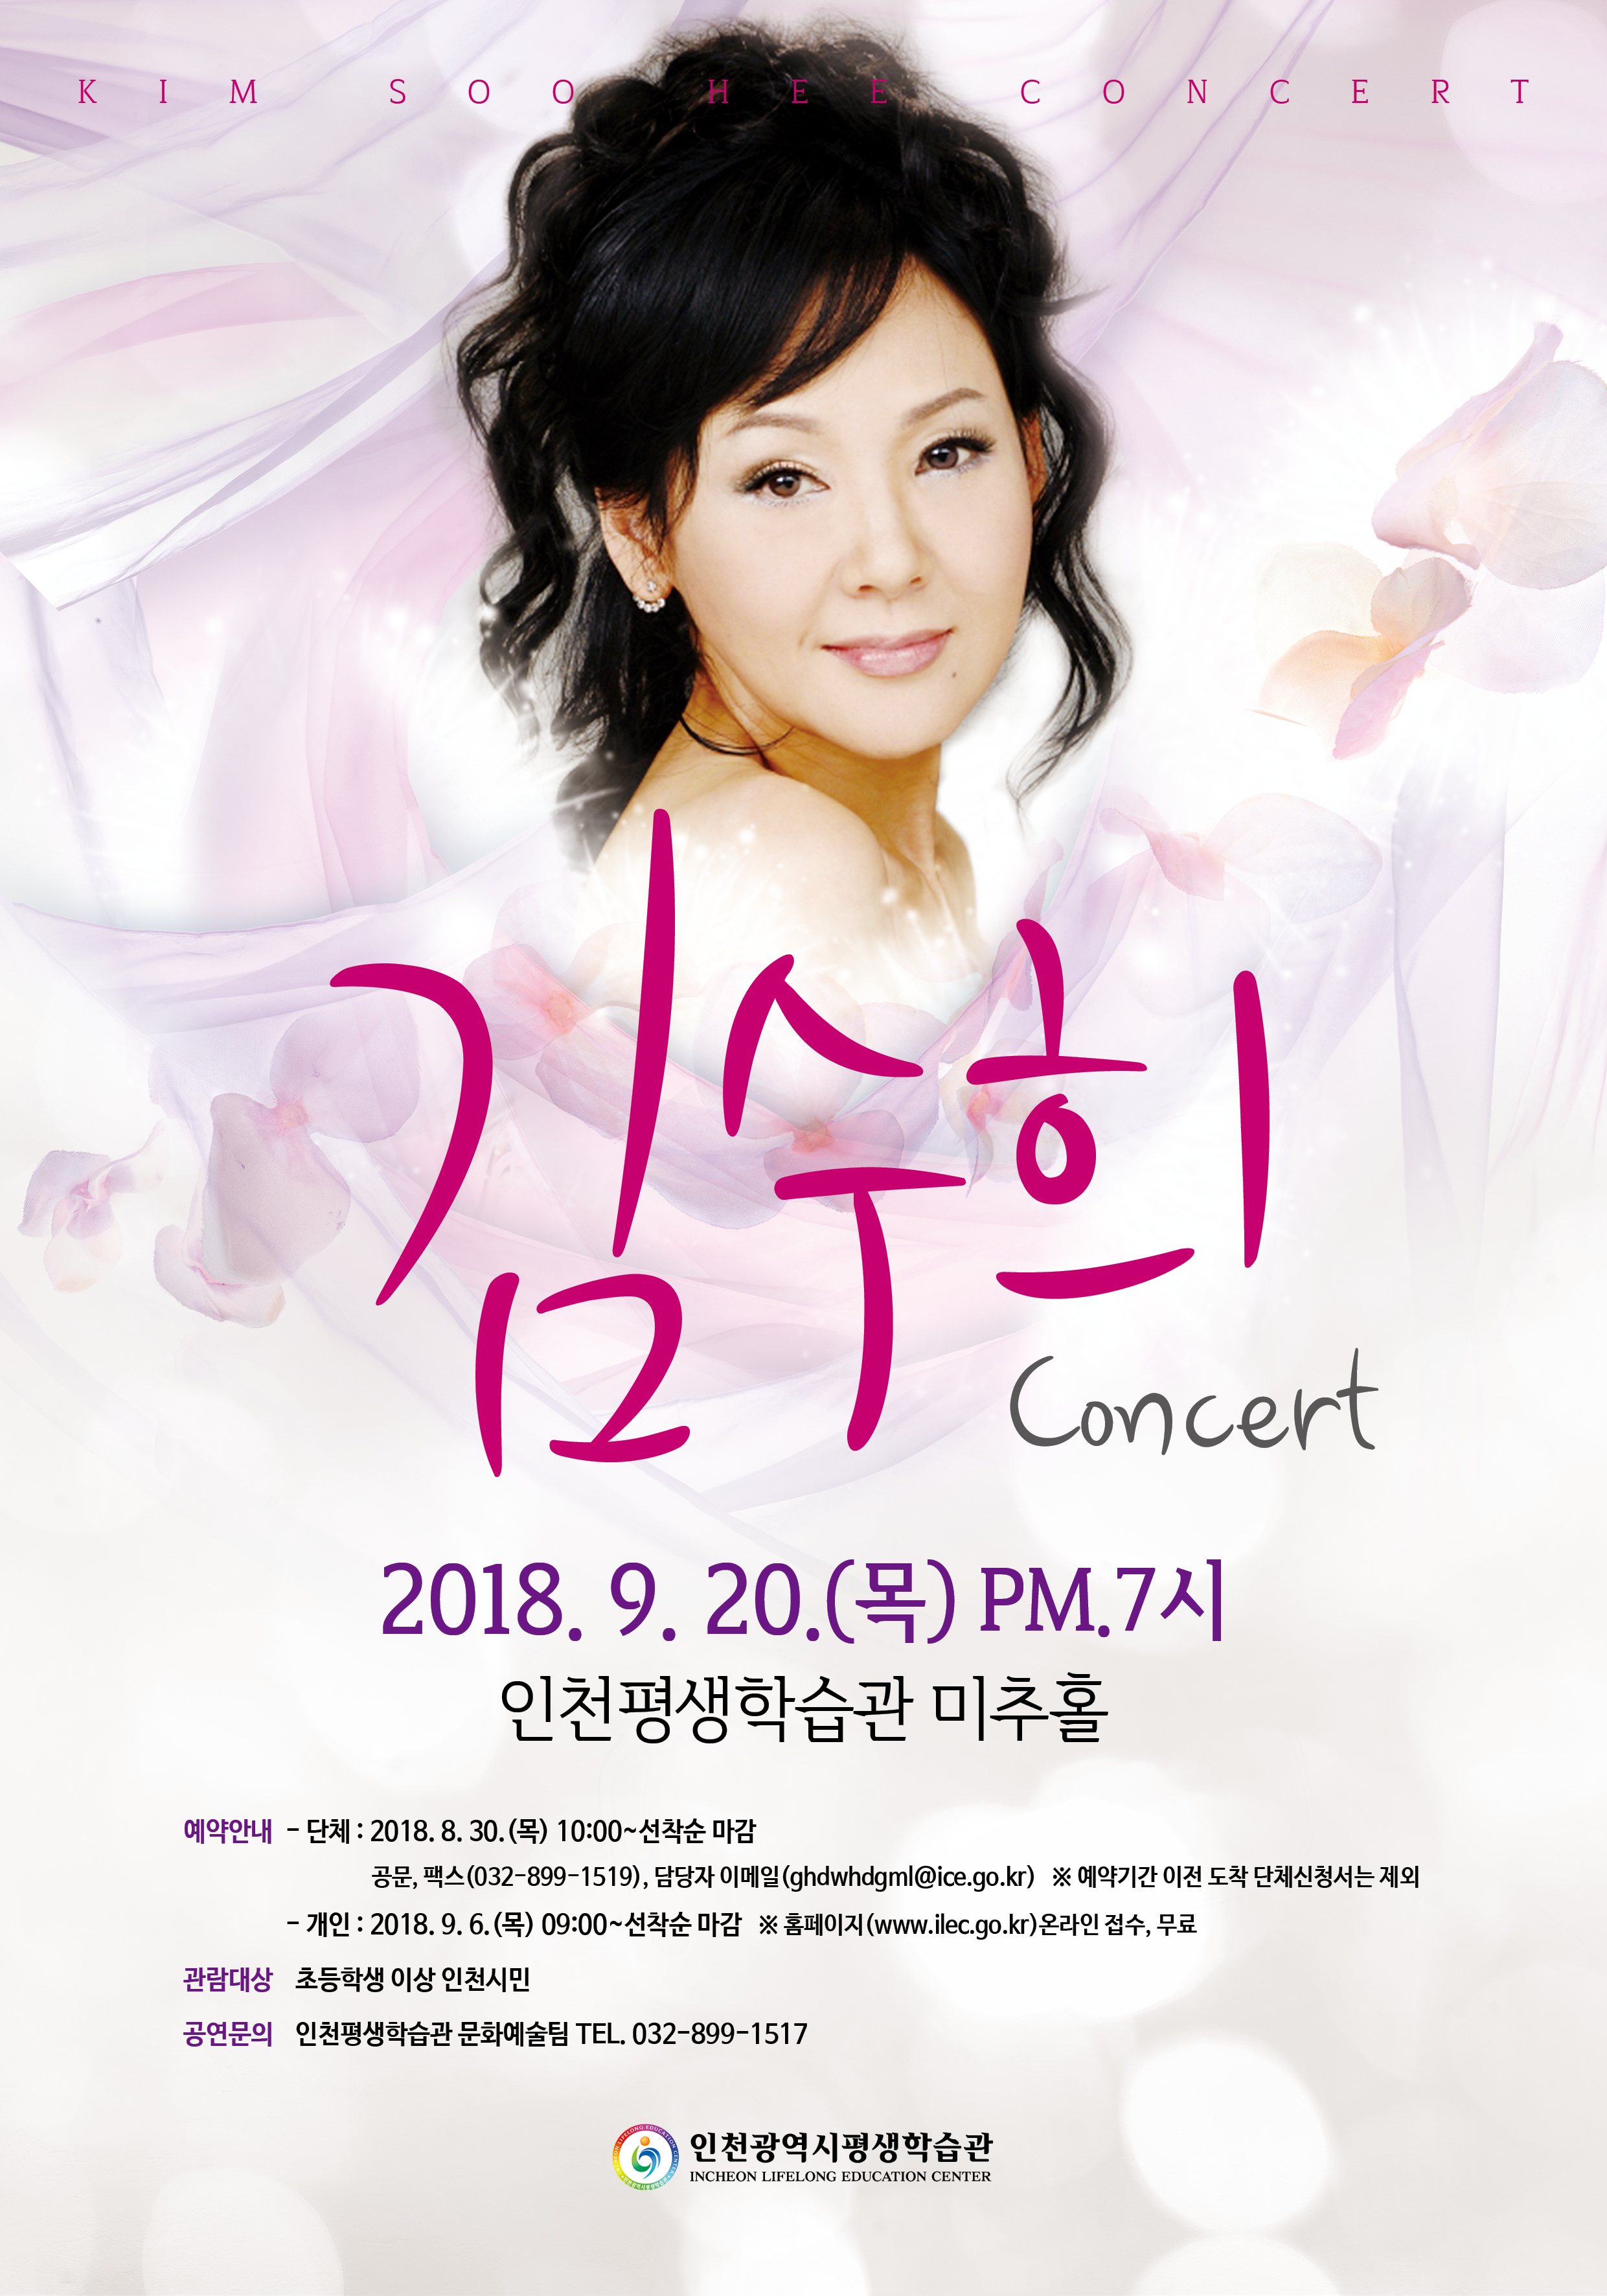 9월 김수희 콘서트관련 포스터 - 자세한 내용은 본문참조